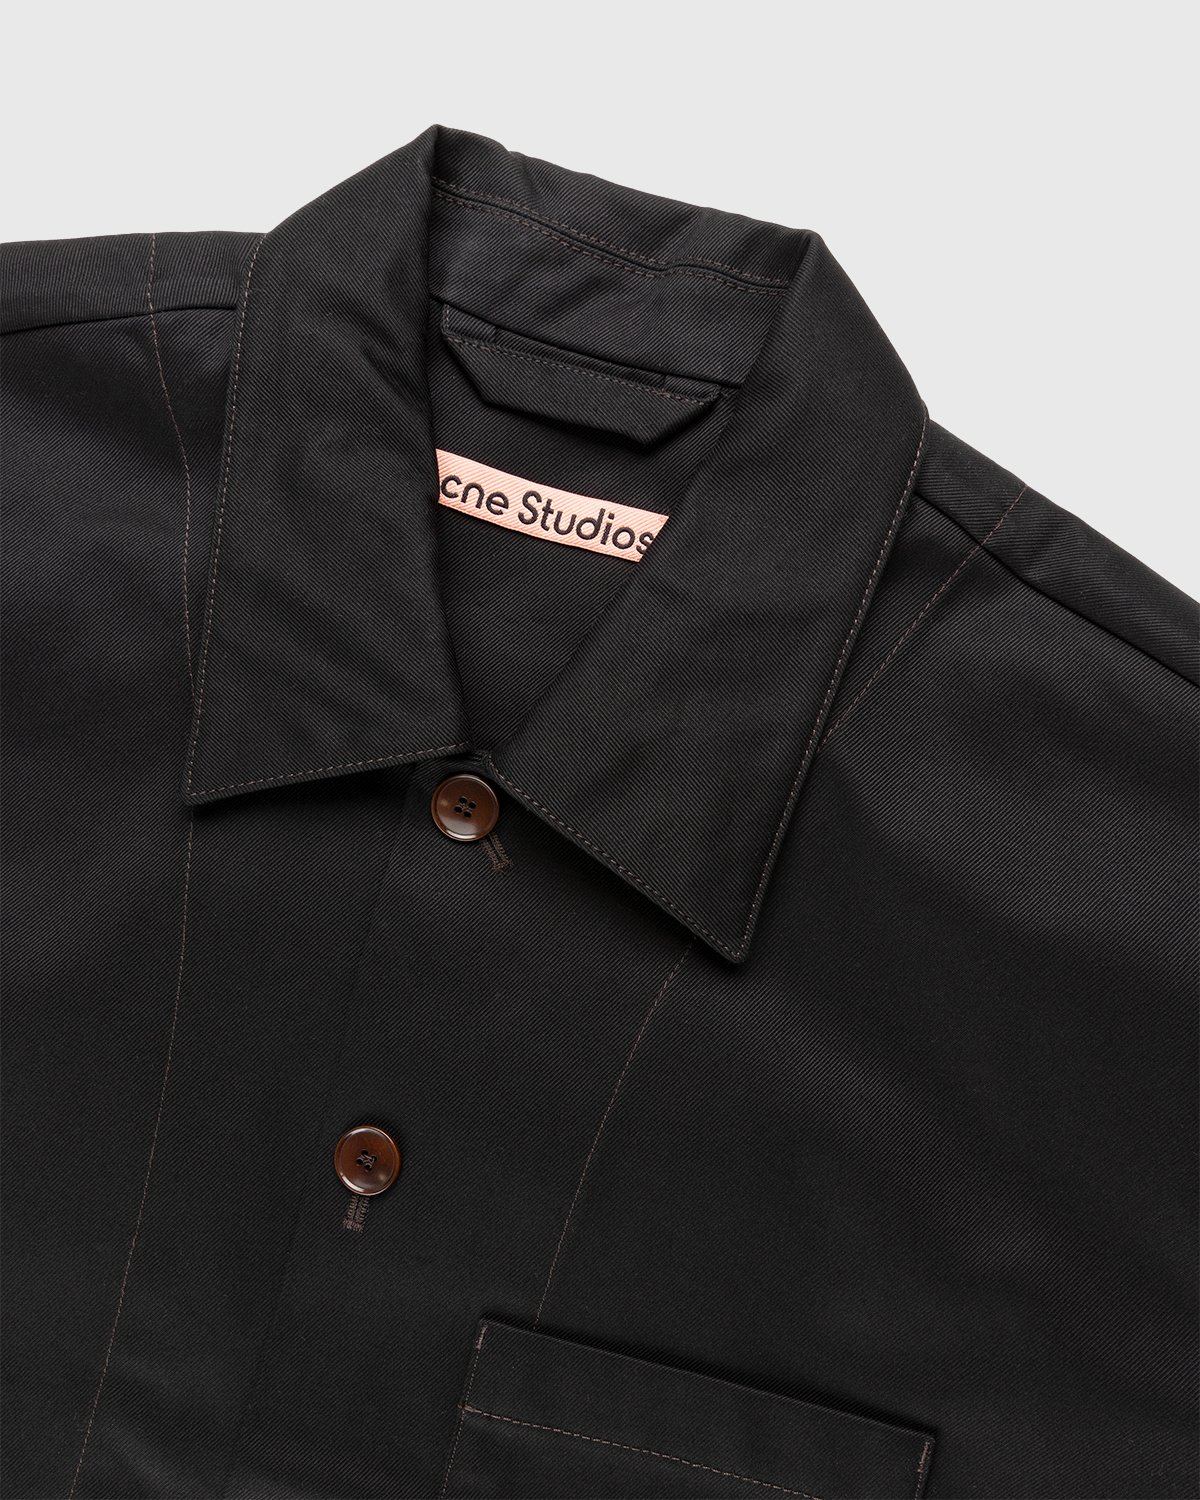 Acne Studios - Cotton Twill Jacket Black - Clothing - Black - Image 4